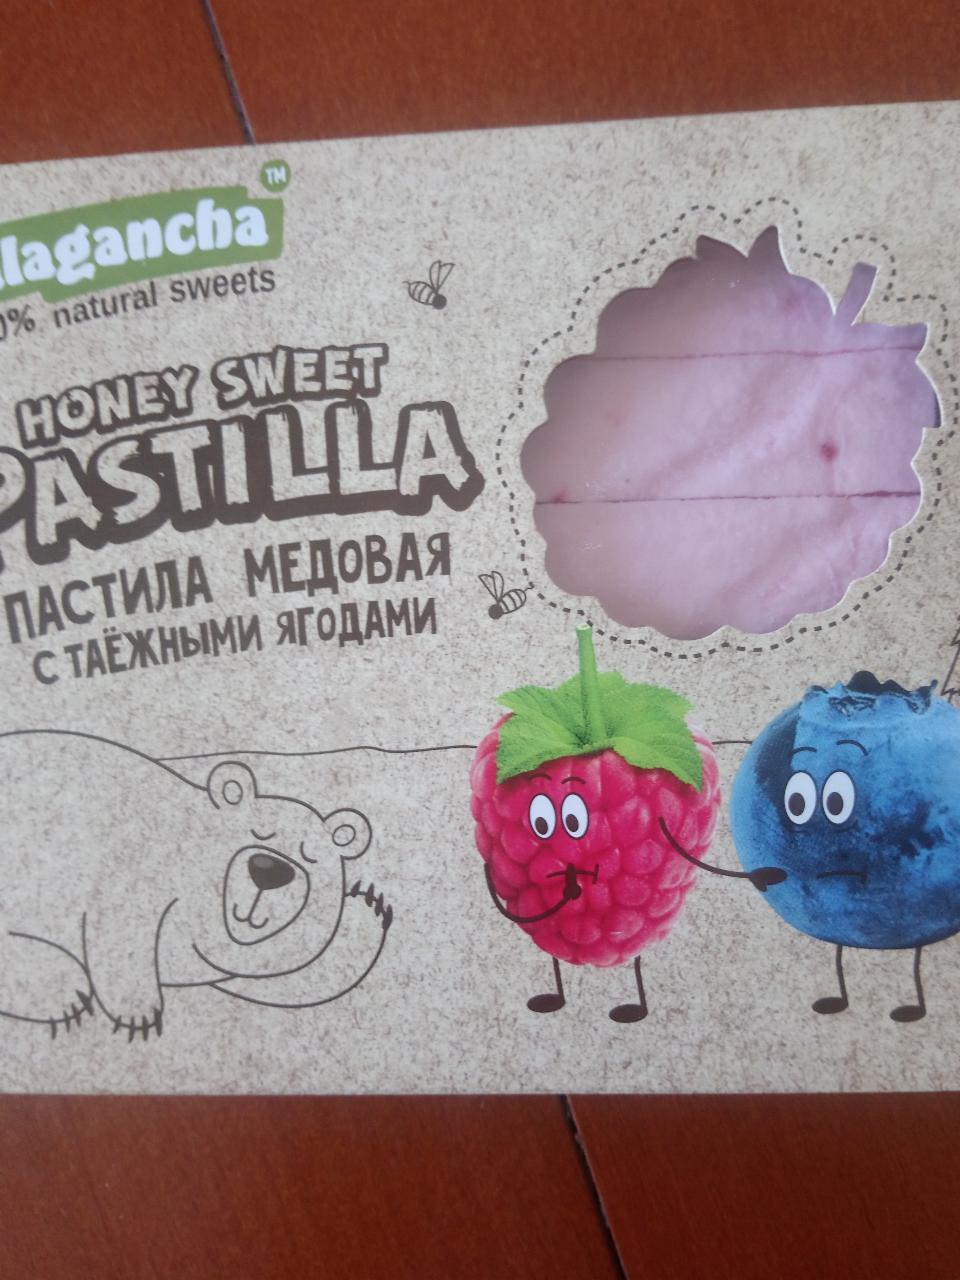 Фото - Пастила медовая с таежными ягодами Galagancha